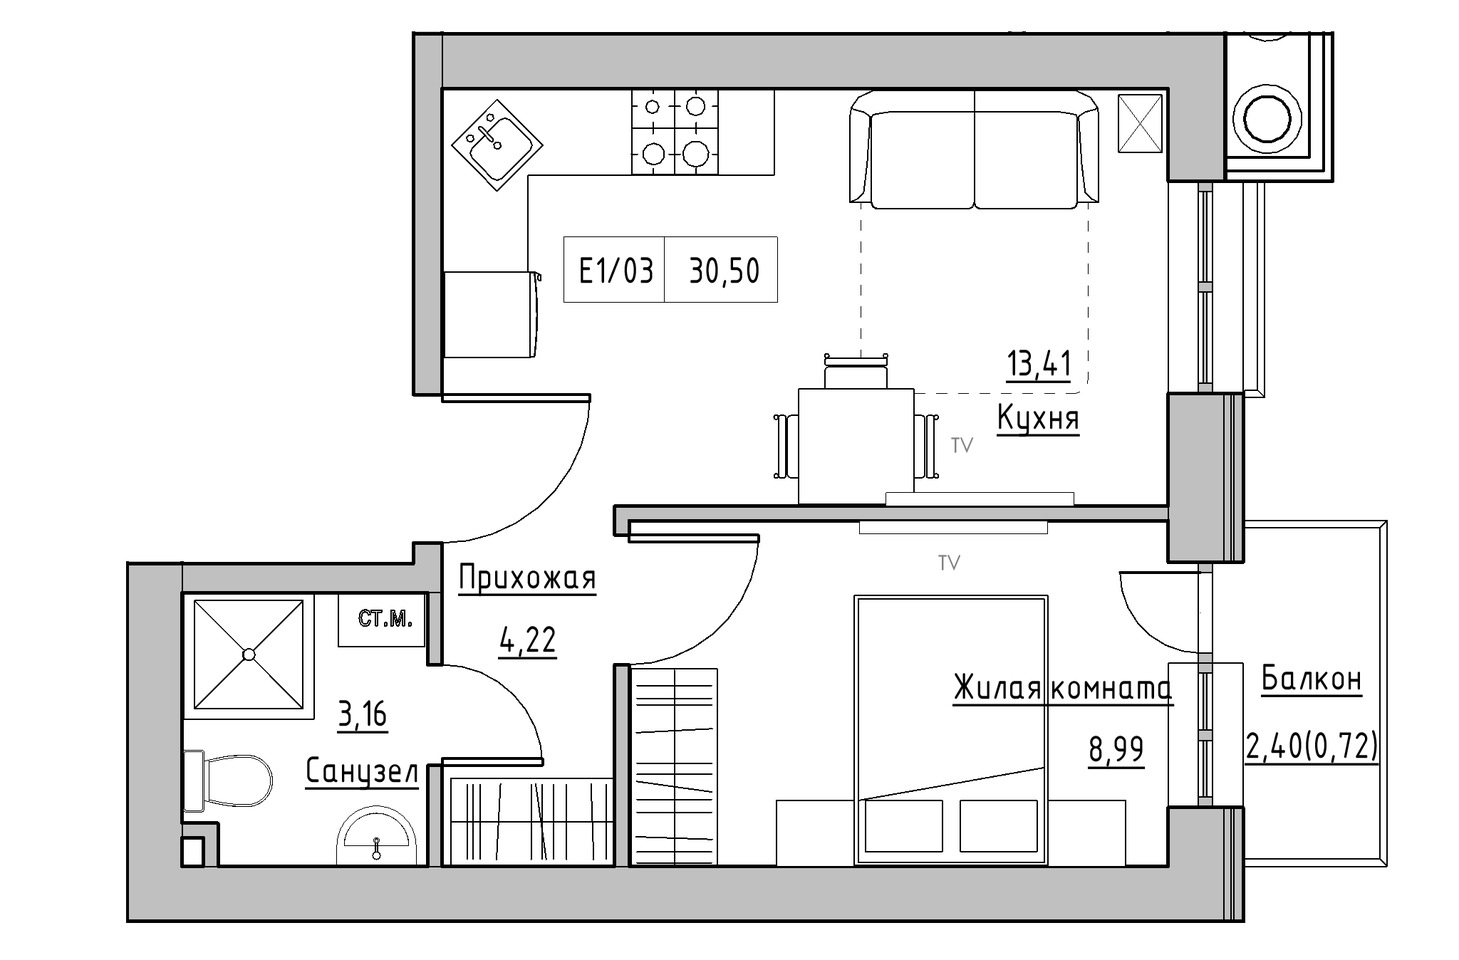 Планировка 1-к квартира площей 29.78м2, KS-005-05/0002.